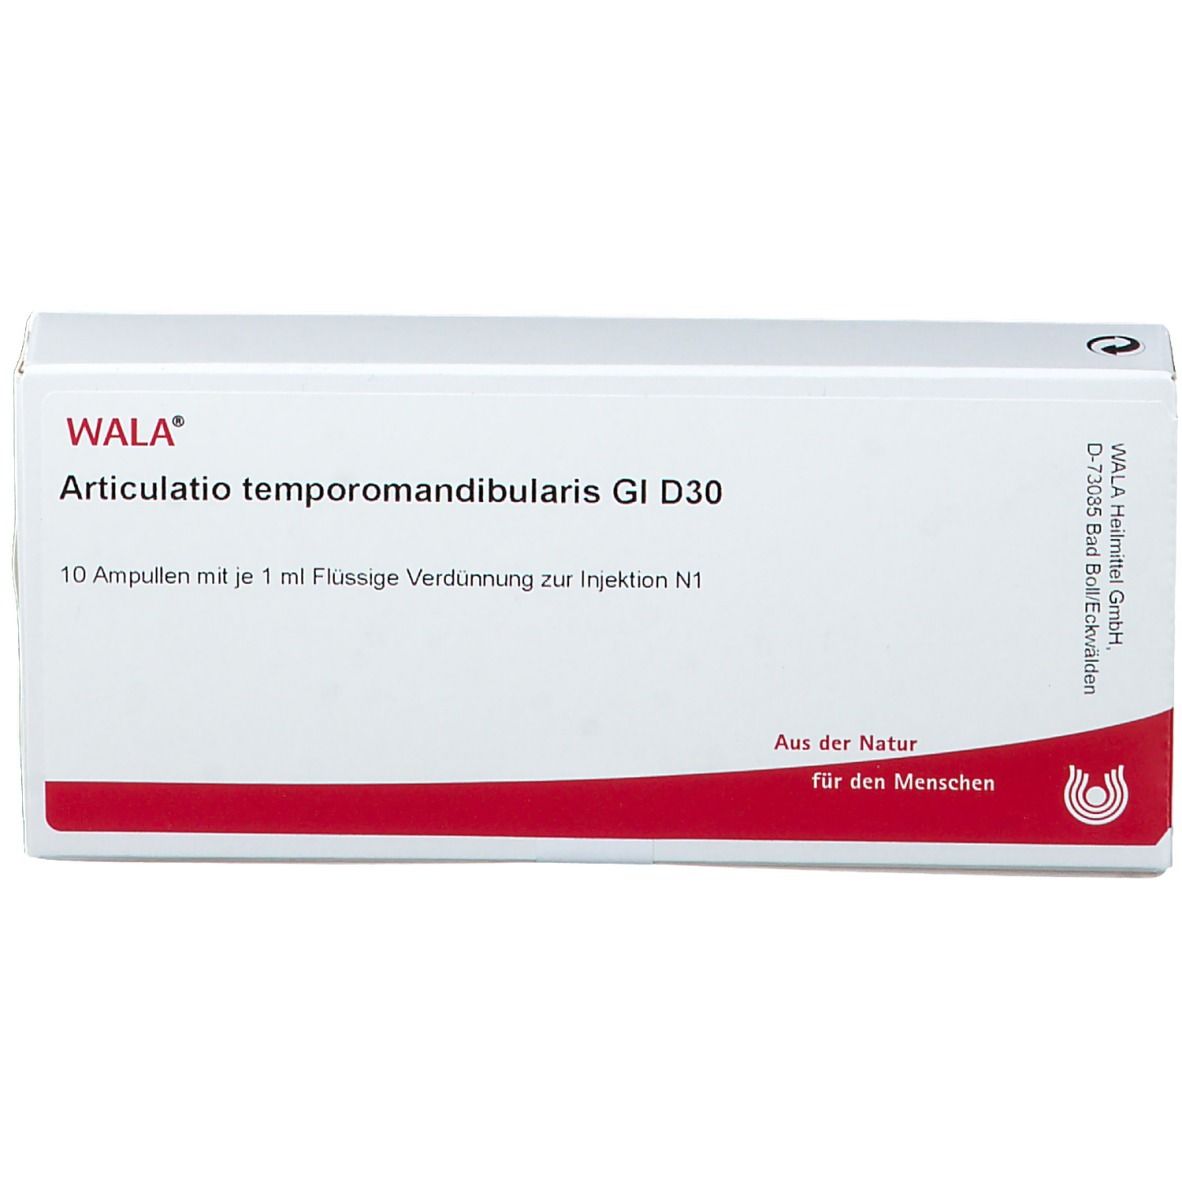 WALA® Articulatio temporomandibularis Gl D 30